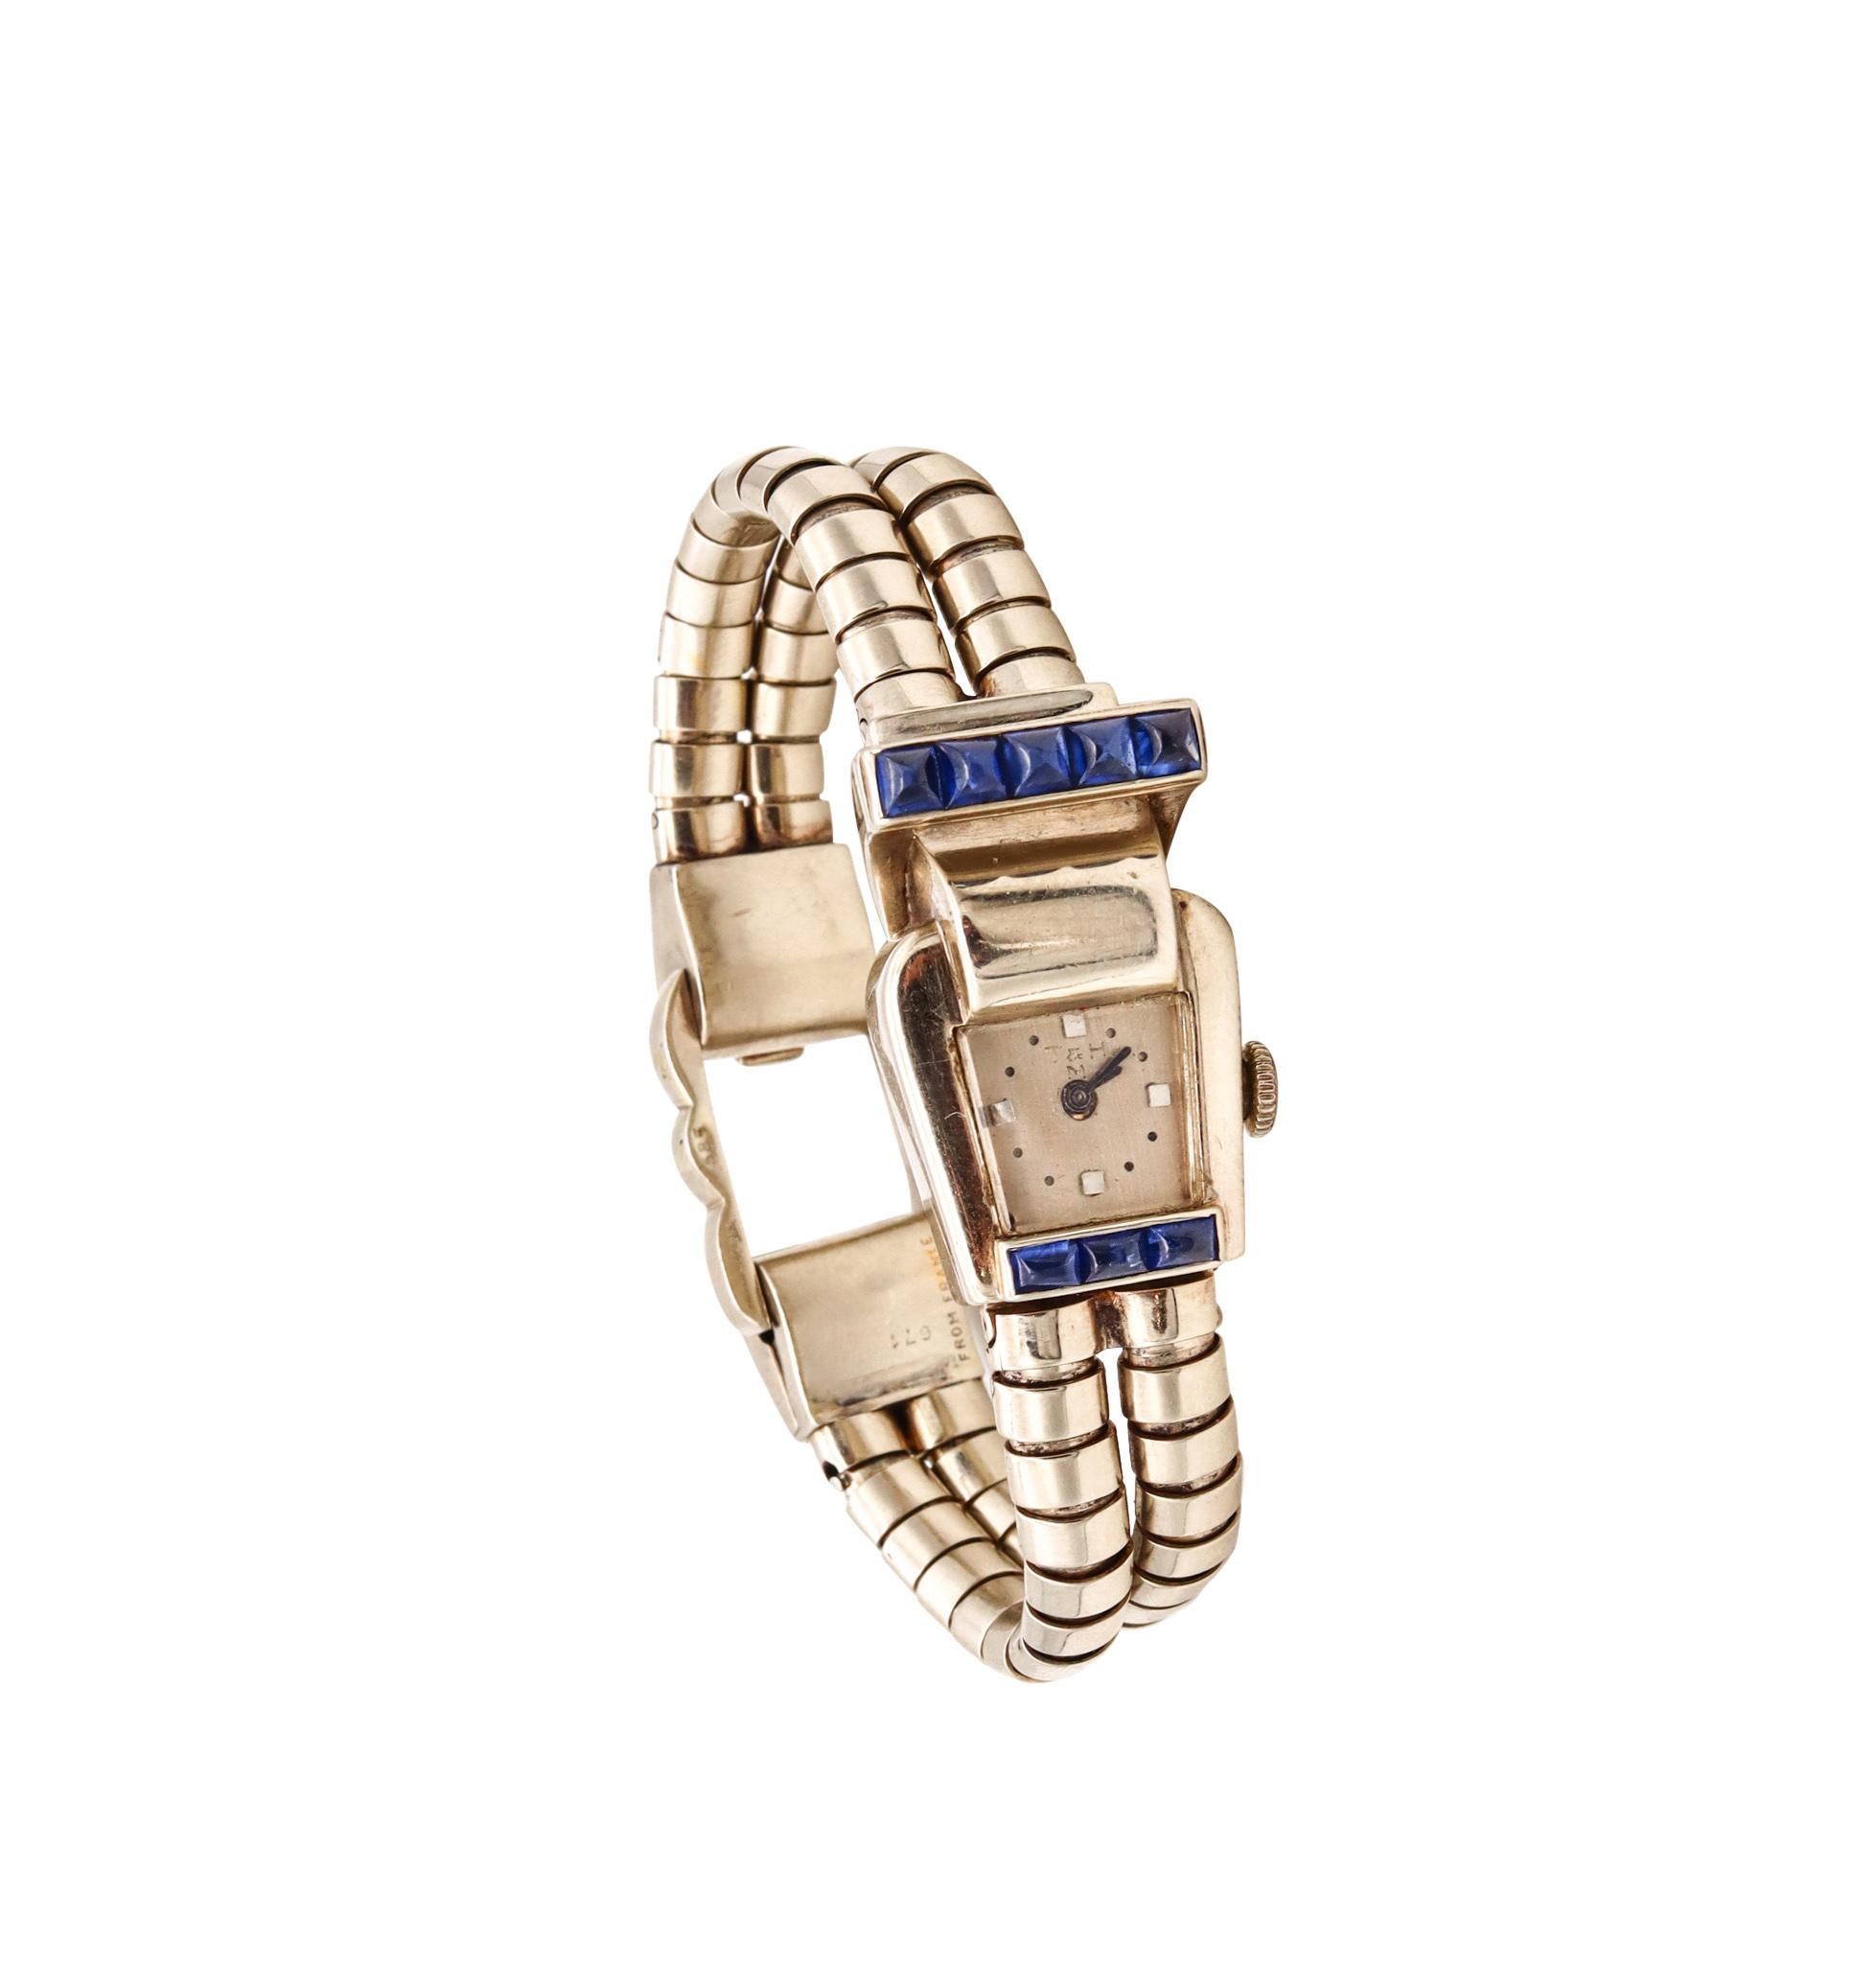 Eine Armbanduhr mit Juwelen, entworfen von Trabert & Hoeffer-Mauboussin.

Schönes geometrisches Stück, das in Paris, Frankreich, vom Haus Trabert & Hoeffer-Mauboussin in den 1950er Jahren geschaffen wurde. Diese Retro-Armbanduhr wurde sorgfältig aus